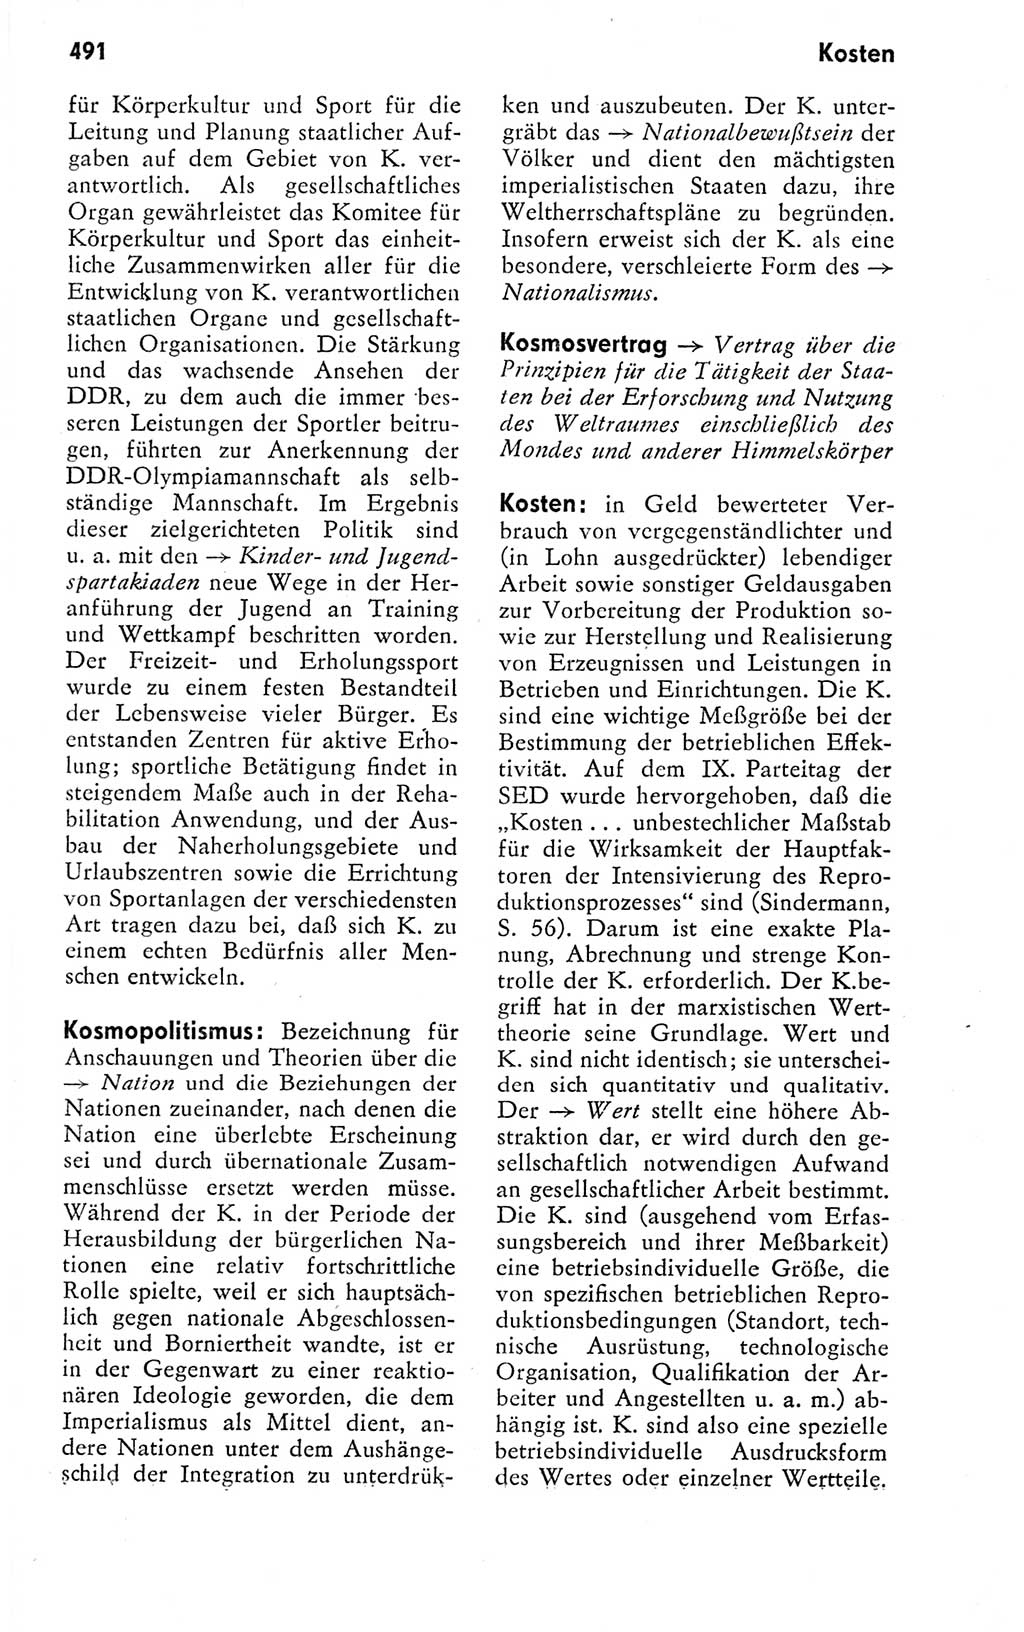 Kleines politisches Wörterbuch [Deutsche Demokratische Republik (DDR)] 1978, Seite 491 (Kl. pol. Wb. DDR 1978, S. 491)